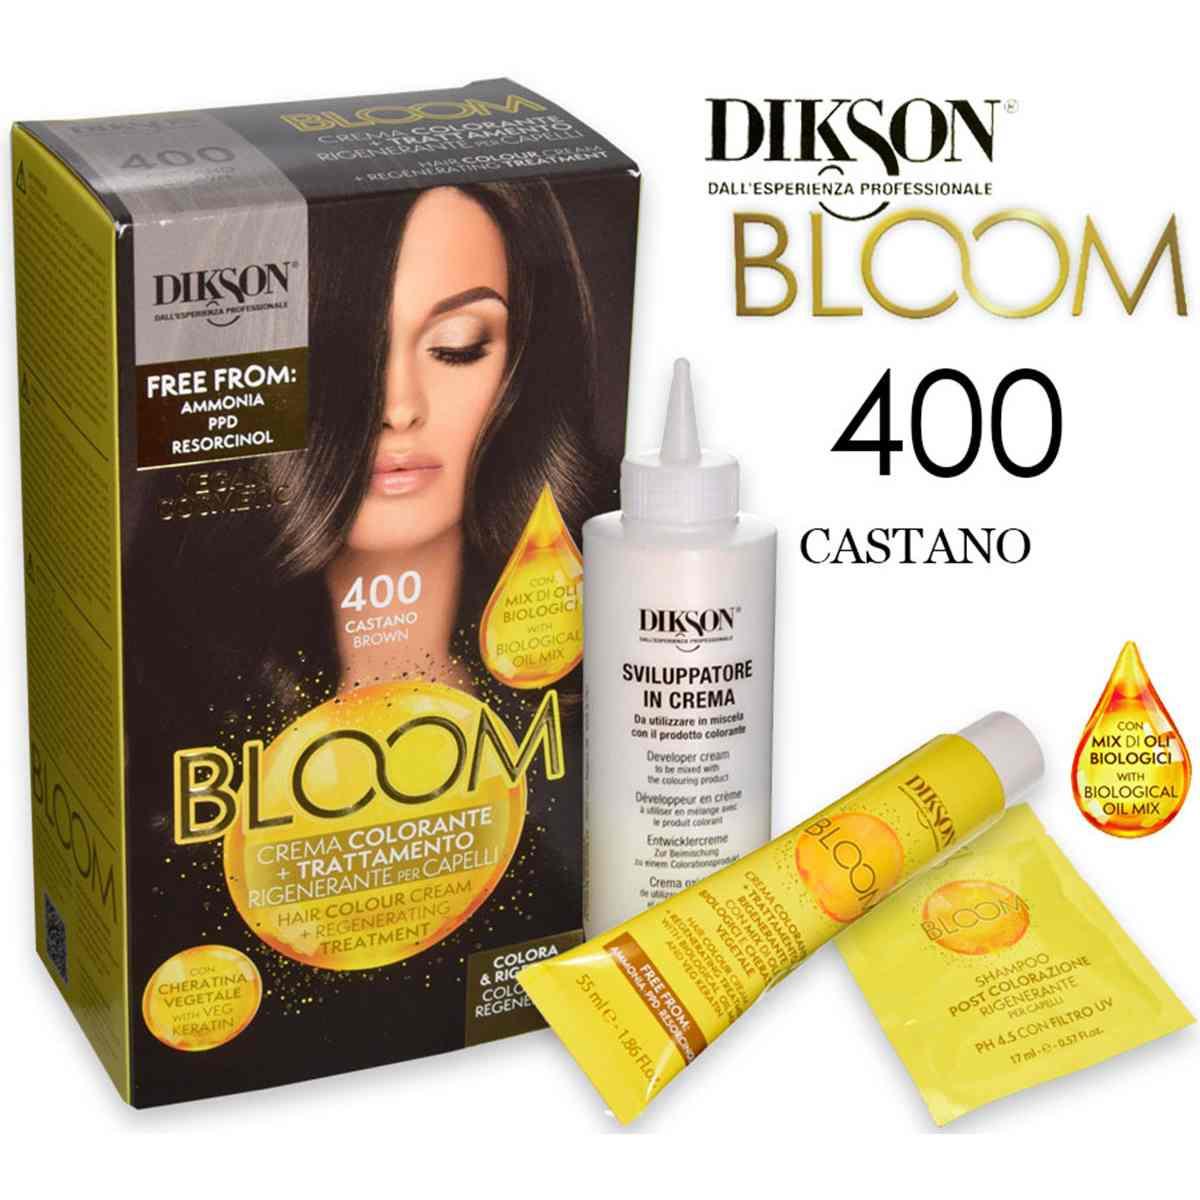 Dikson bloom crema colorante con cheratina 400 castano